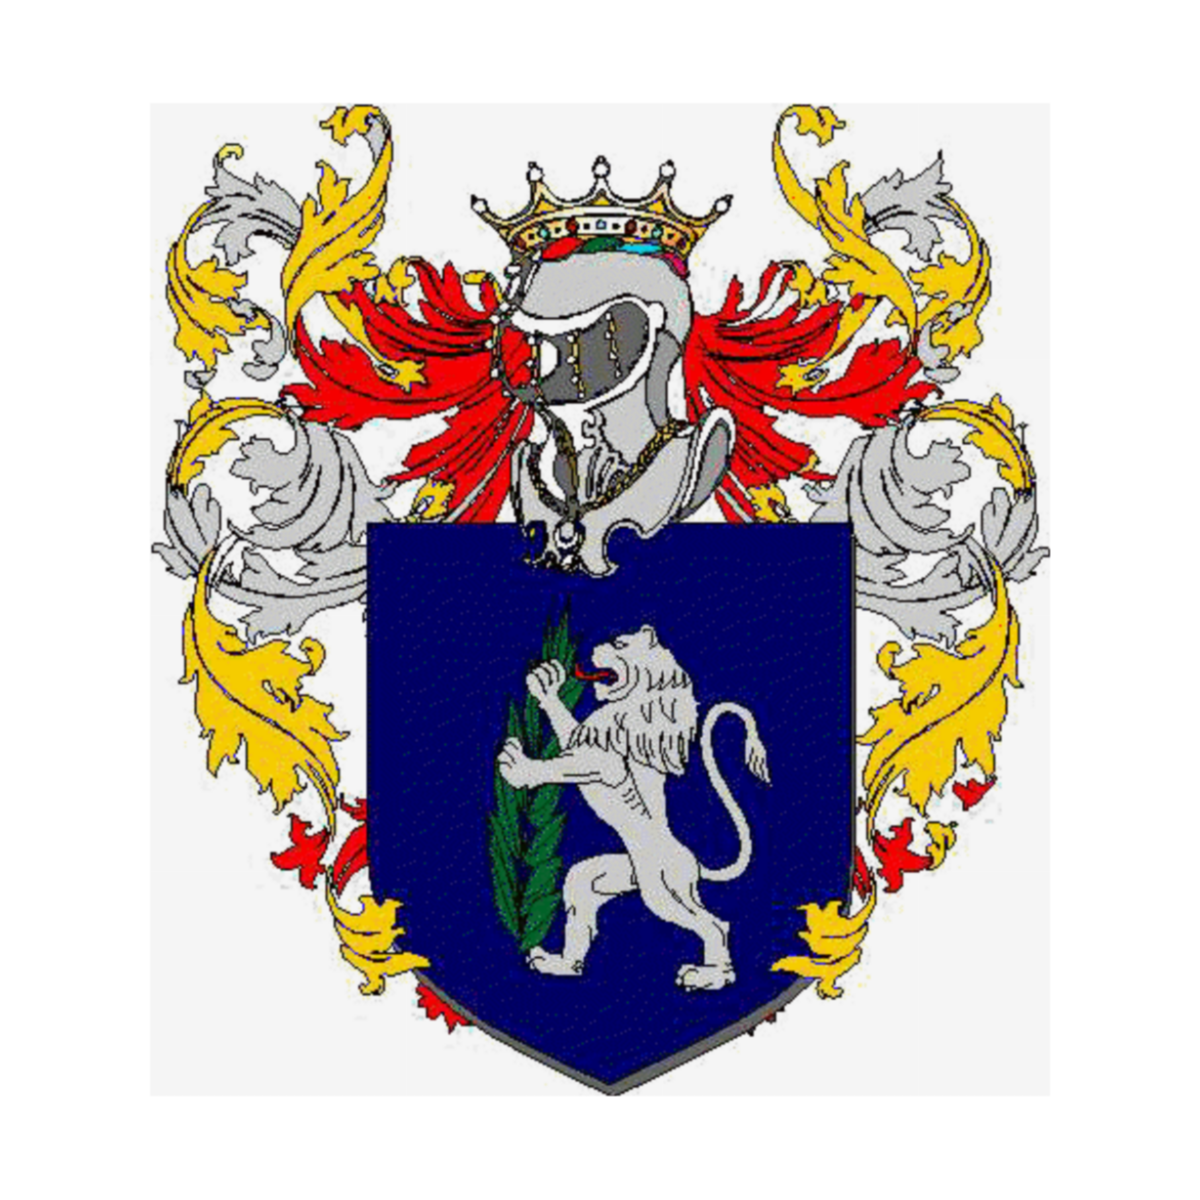 Wappen der Familie Montanarifranceschi